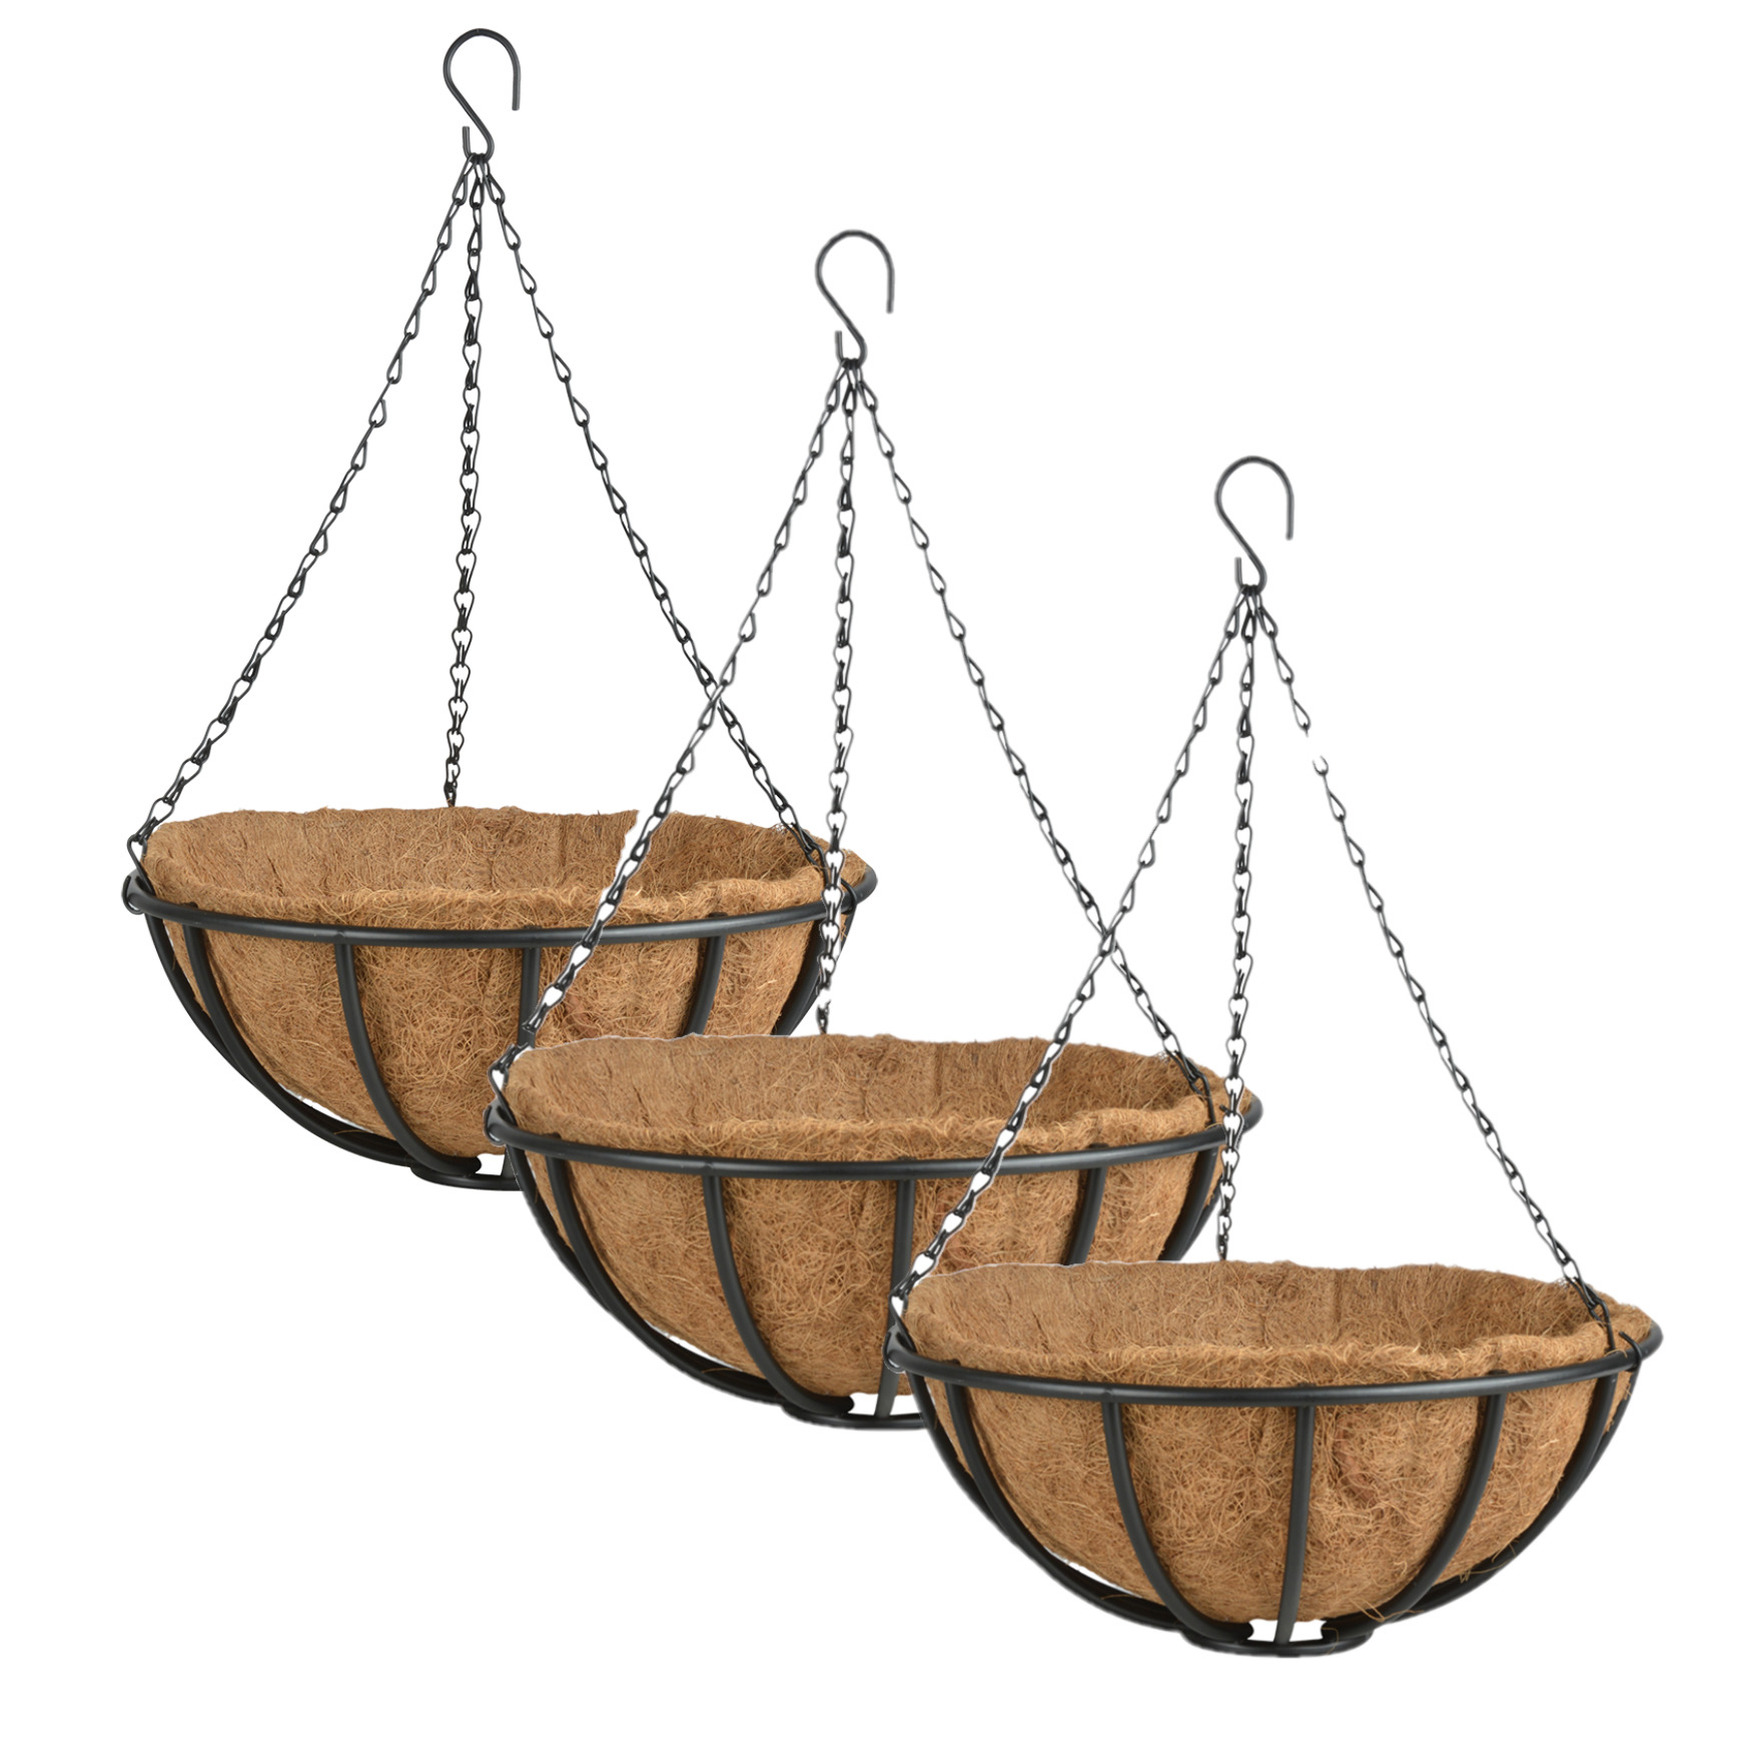 3x stuks metalen hanging baskets-plantenbakken met ketting 35 cm inclusief kokosinlegvel